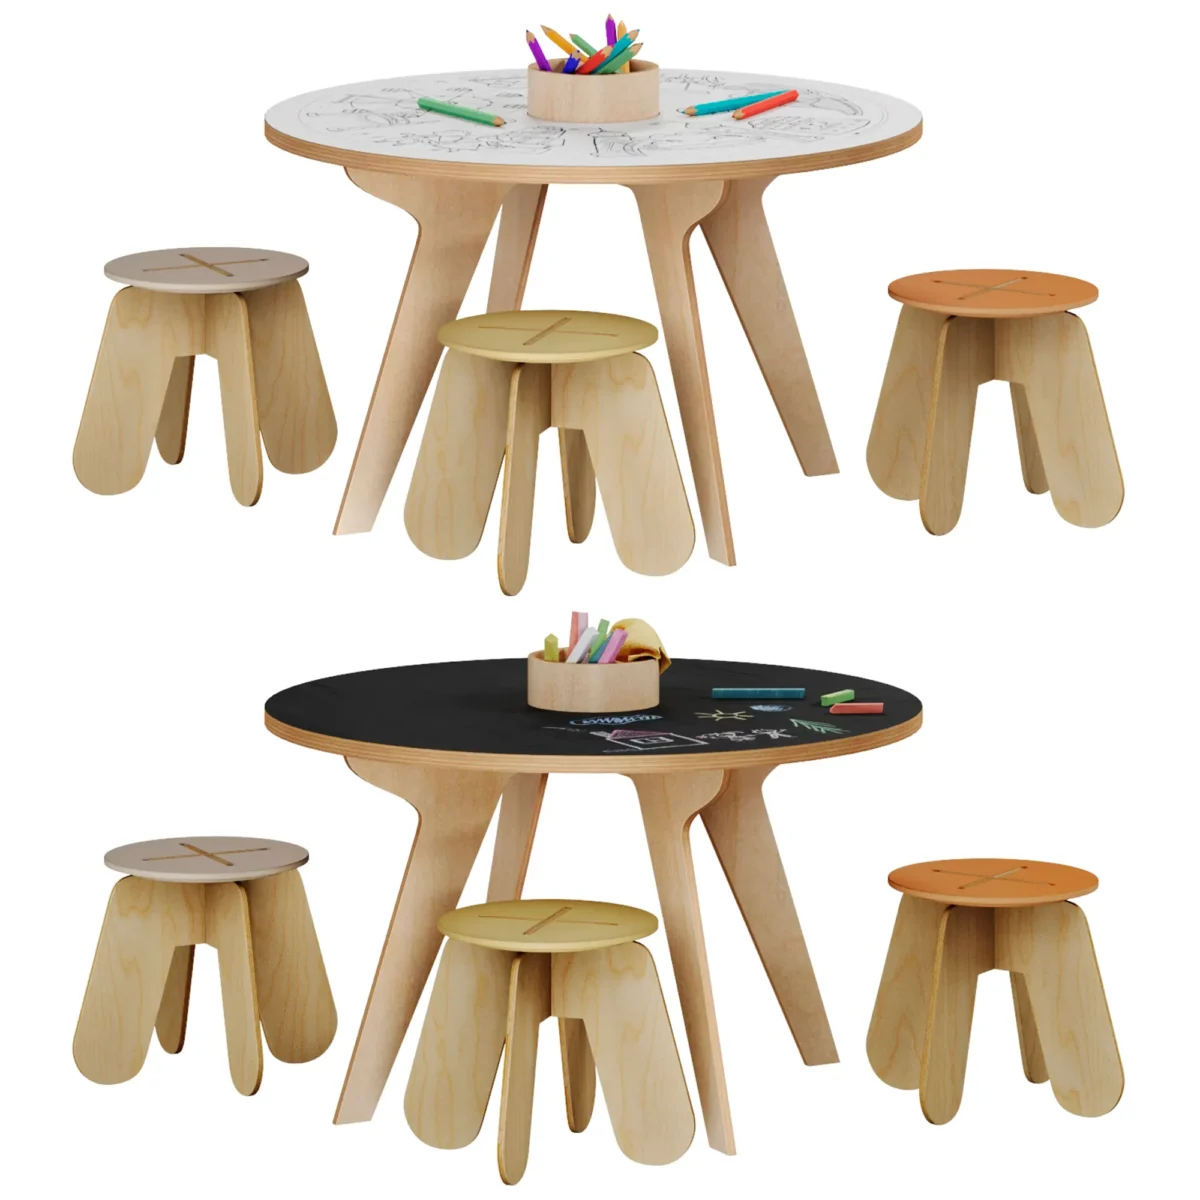 Стол для рисования 3D модель скачать на ru.cg.market, 3ds max, CoronaRender